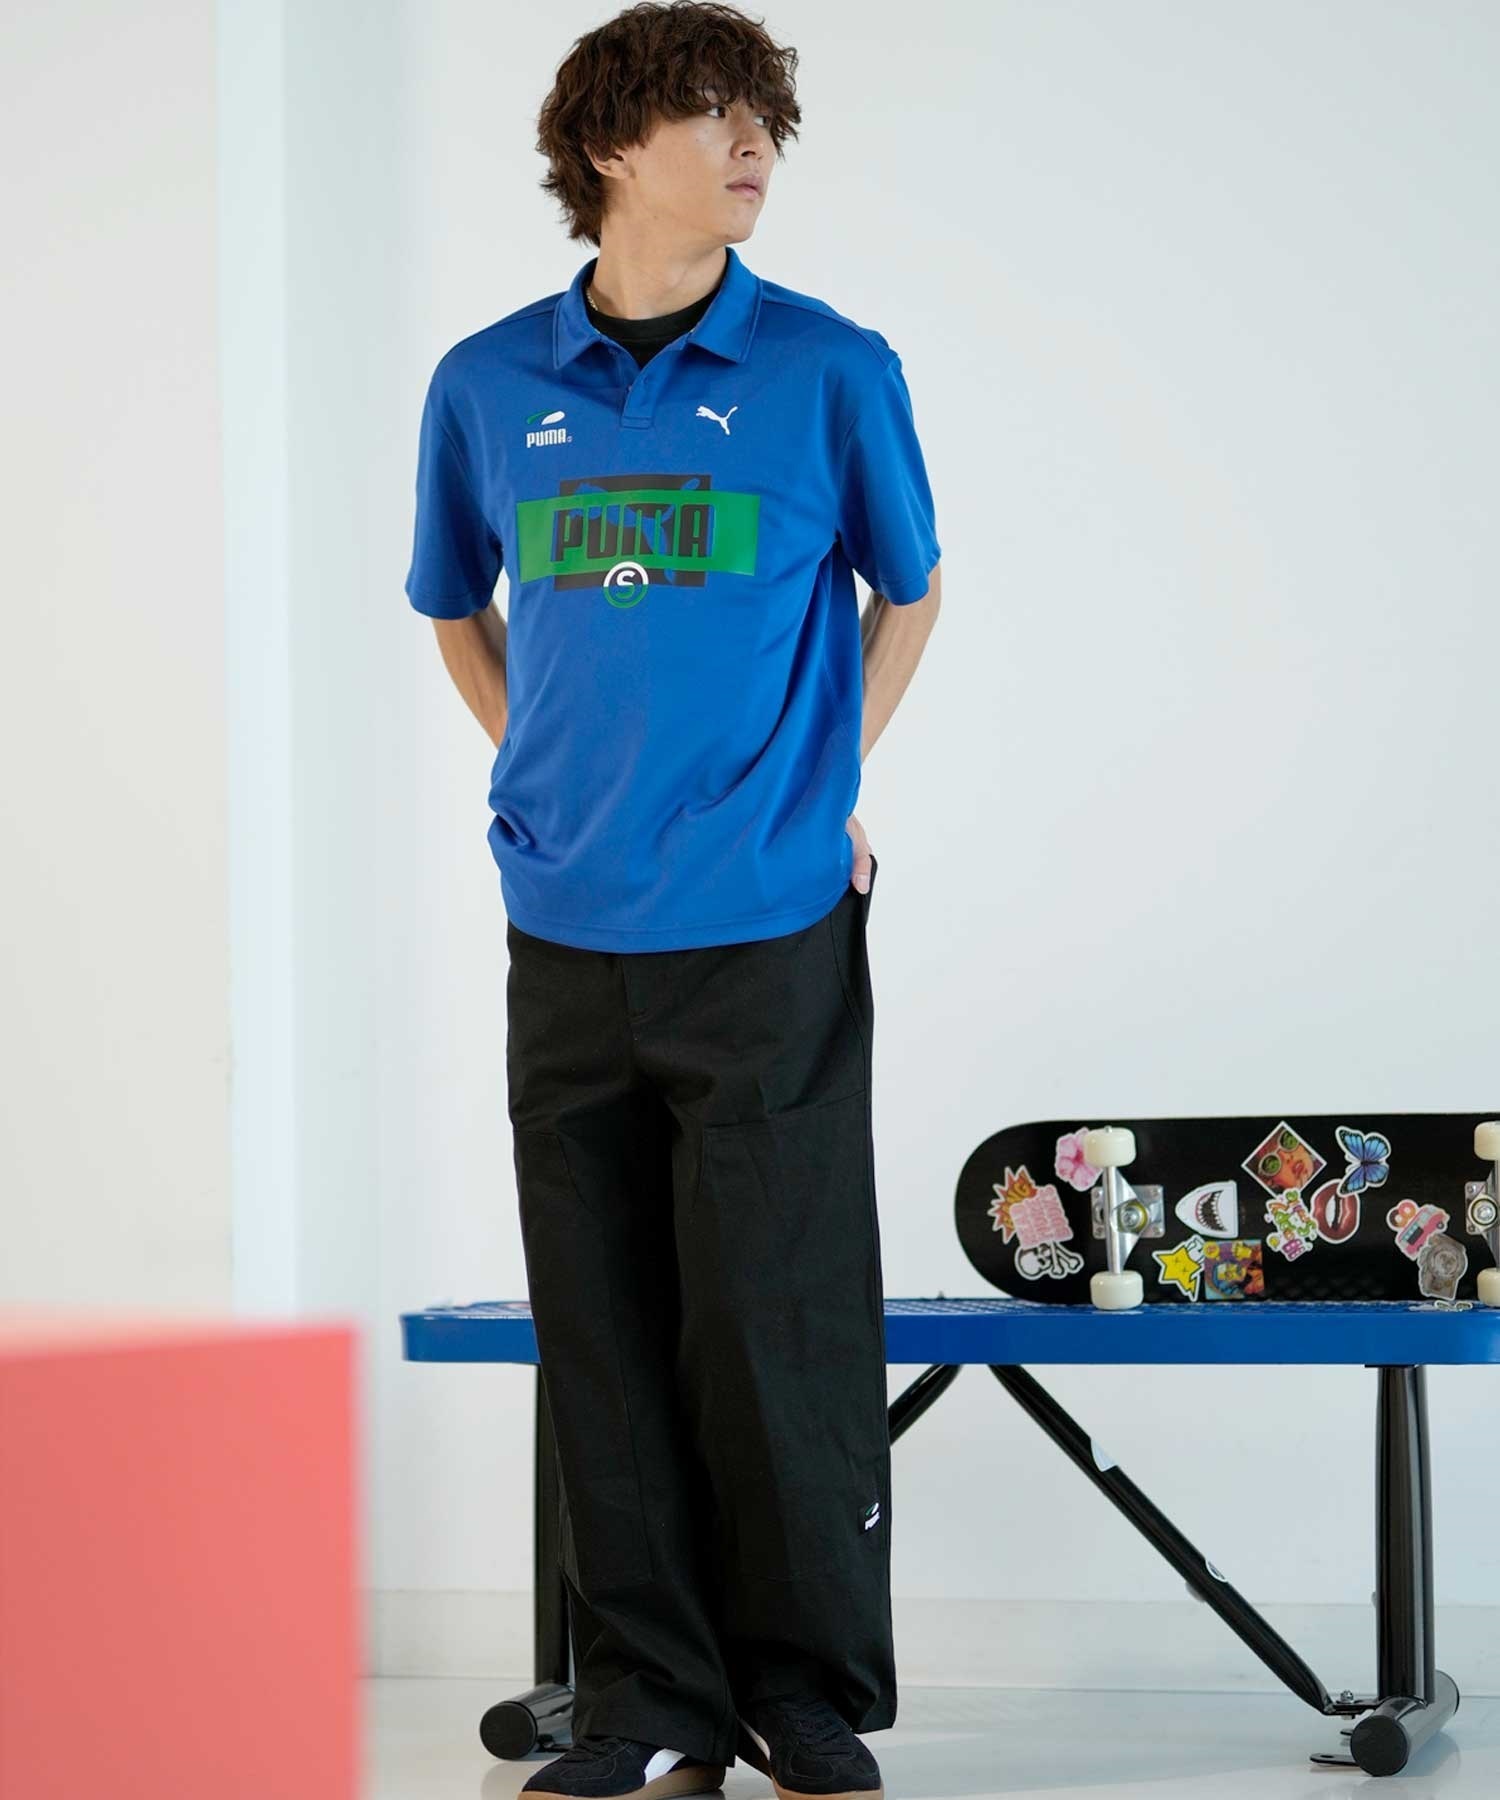 【マトメガイ対象】PUMA プーマ スケートボーディング スケートボード メンズ 半袖 ロシャツ 625694(02-M)